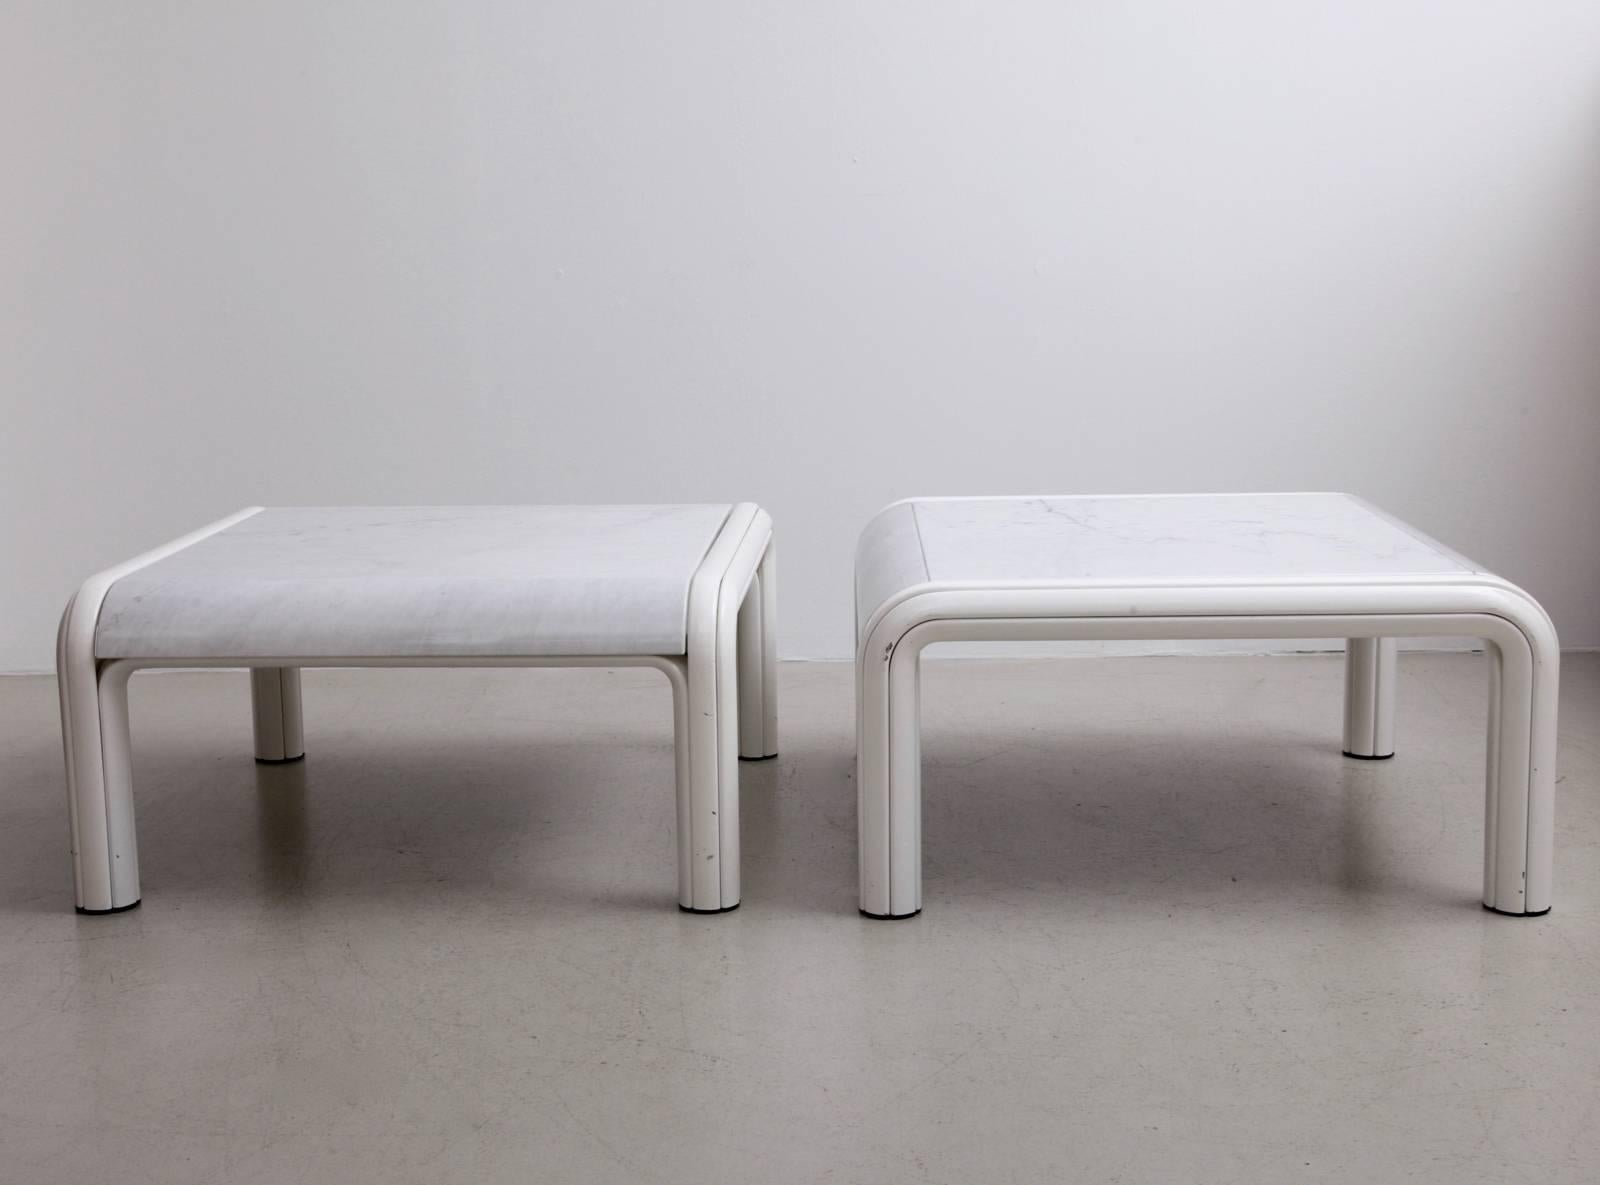 Ensemble de deux tables basses ou de canapés de Gae Aulenti pour Knoll des années 1970. Version rare avec plateau de table en marbre blanc ! Très bon état avec quelques éclats de laque sur la base.

